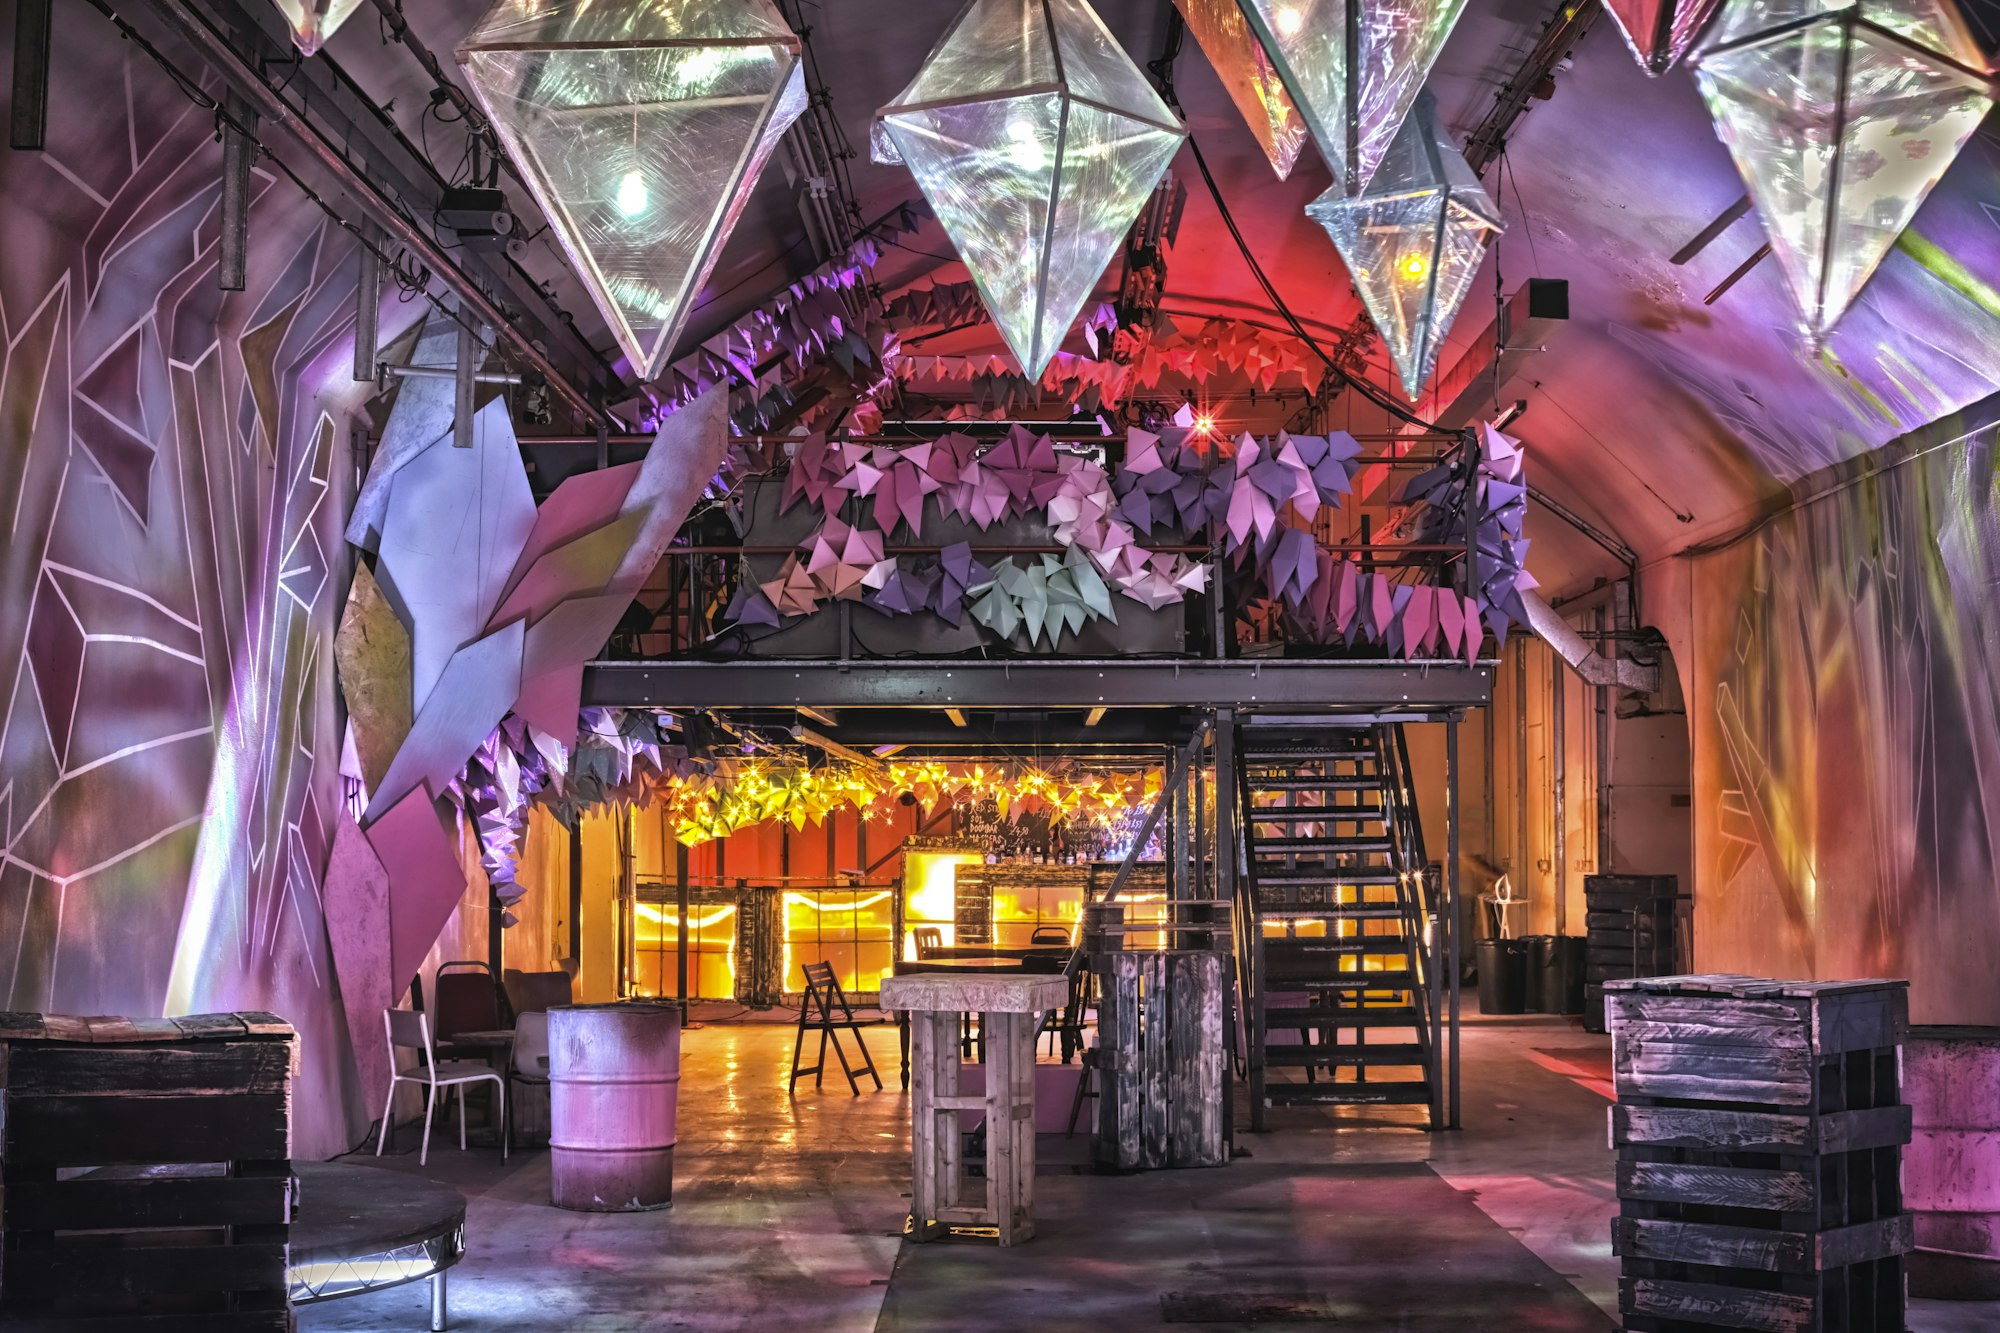 Lila och rosa belysning framhäver den industriella stilen inuti The Vaults i London.